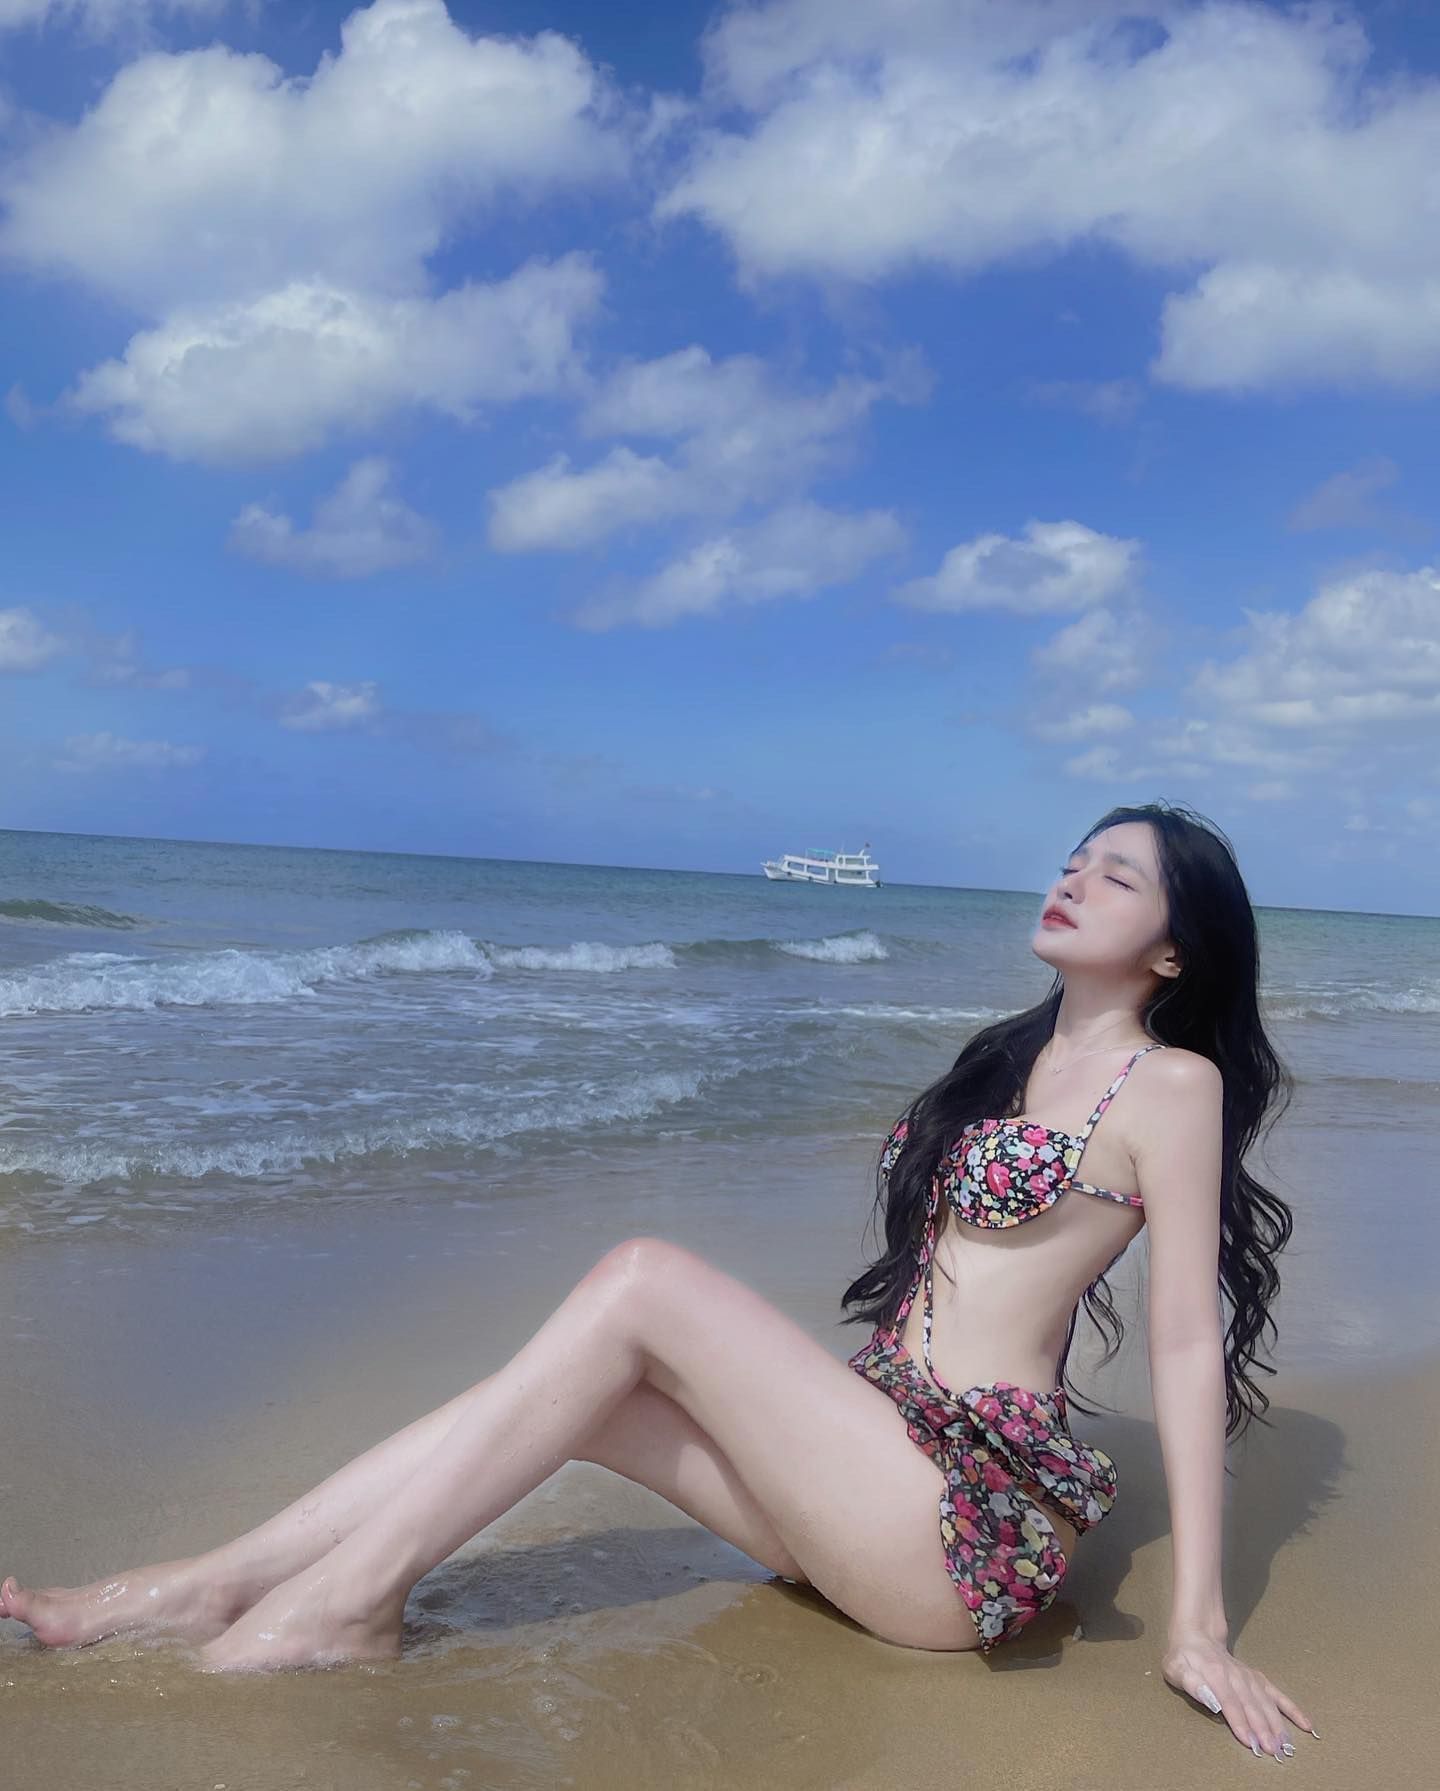 Cùng ngắm girl xinh Mai Ngọc Khánh Linh trong những bộ bikini thật cuốn hút & hấp dẫn